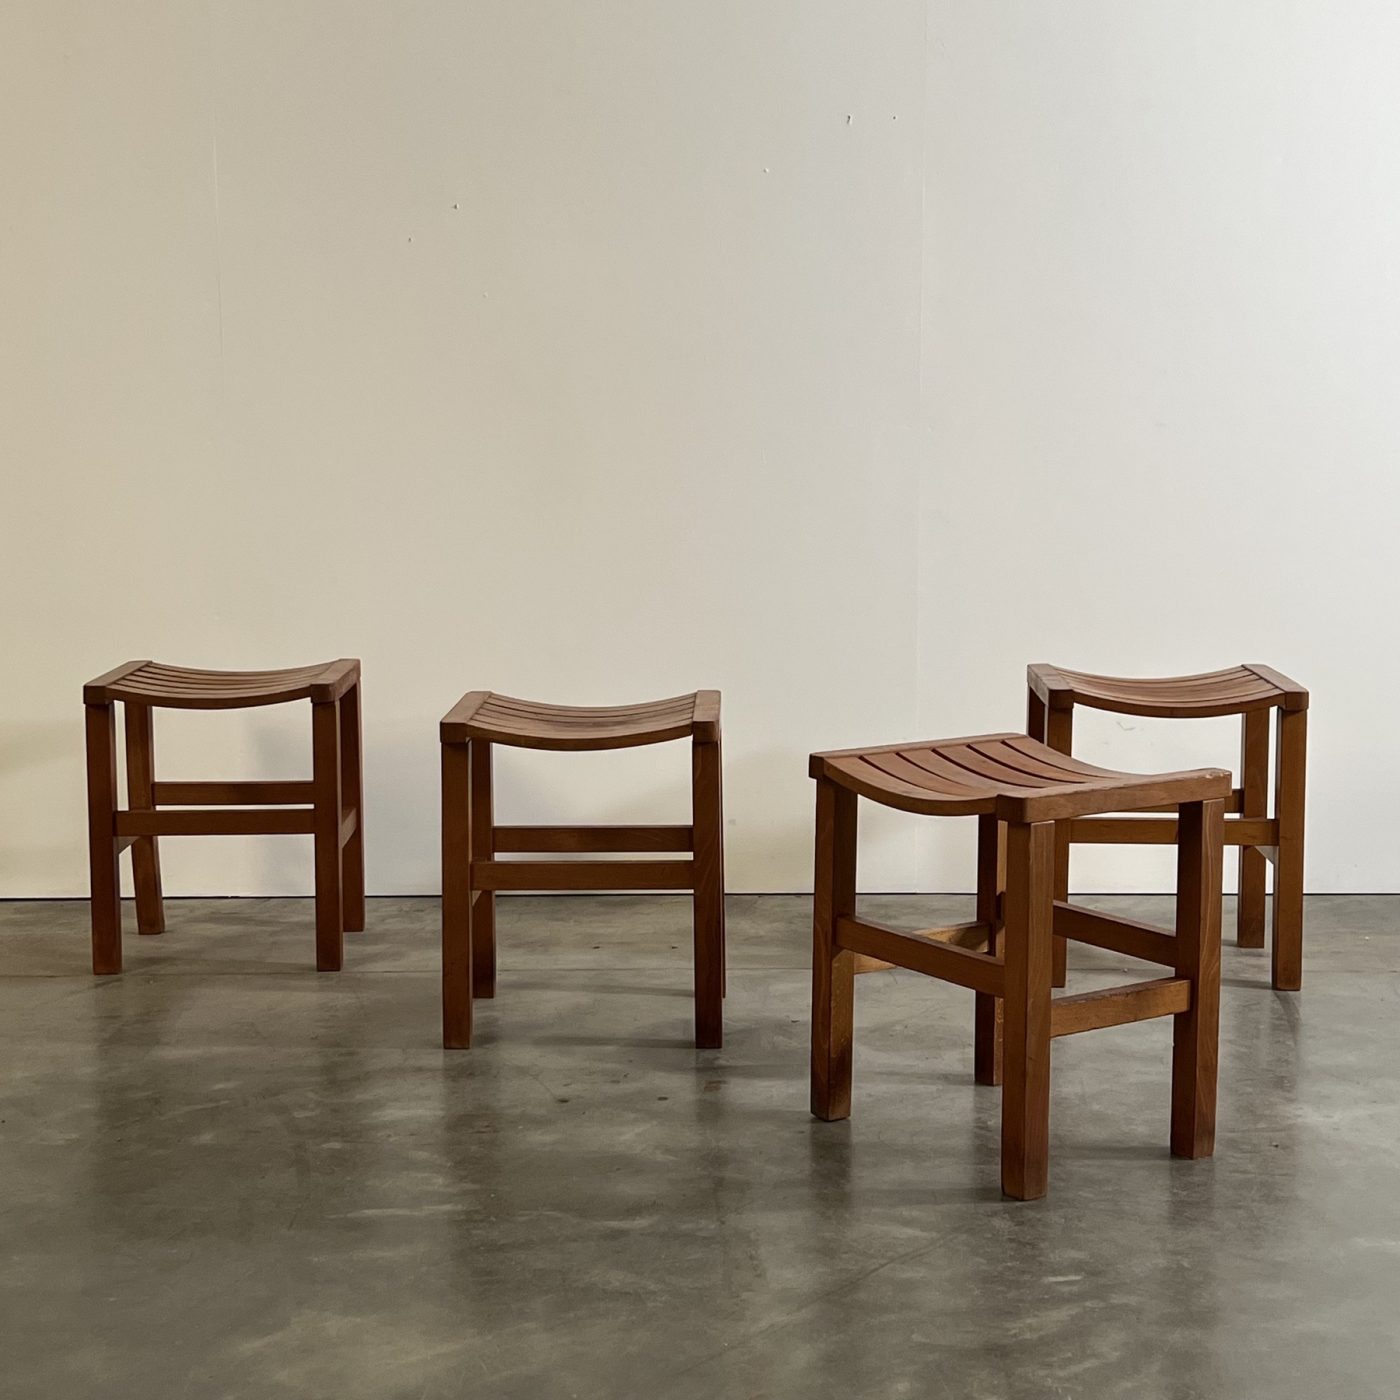 objet-vagabond-vintage-stools0004